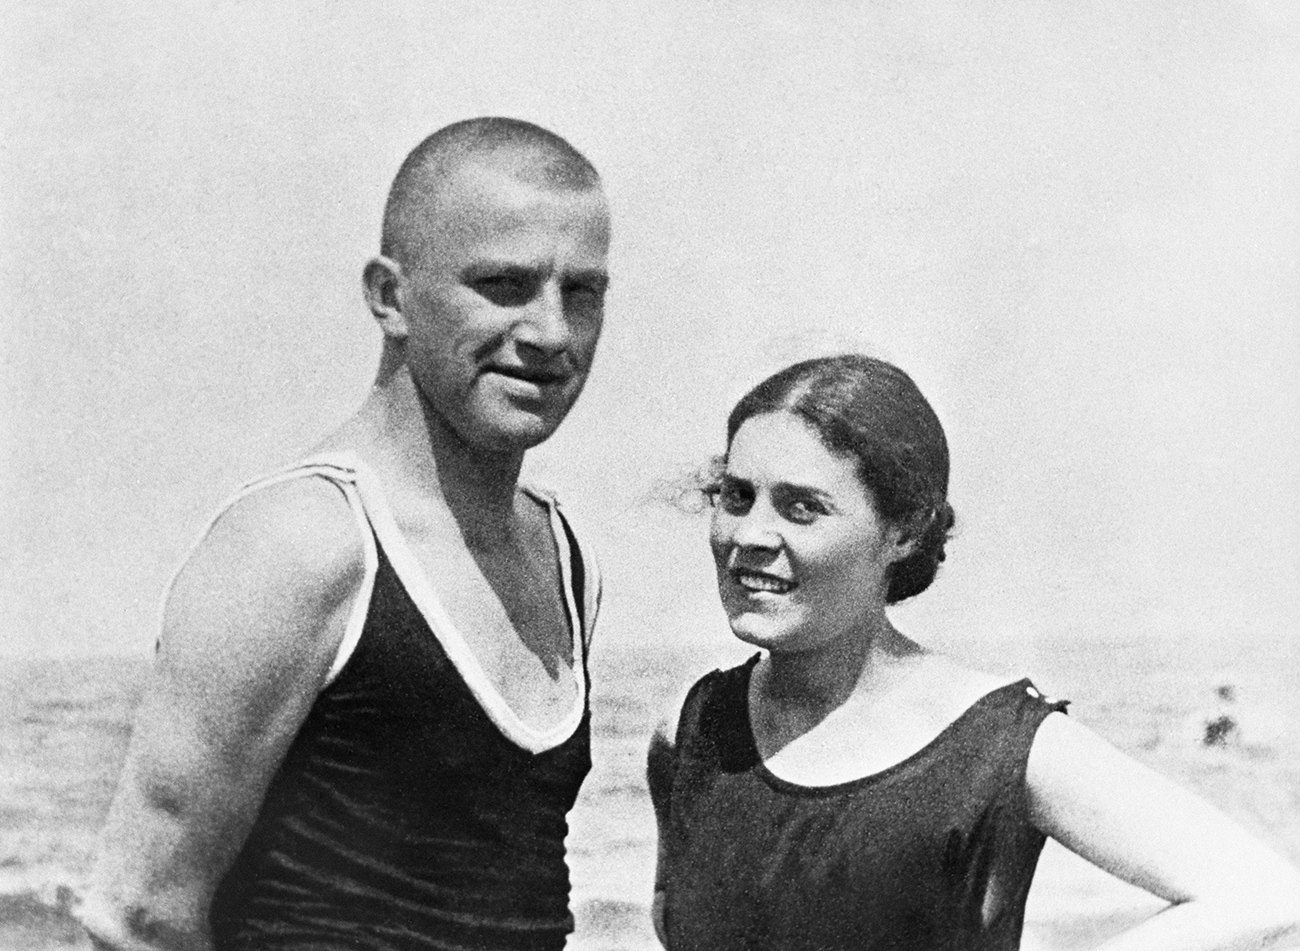 Soviet poet Vladimir Mayakovsky (1893-1930) and Lilia Brik (nee Kagan, 1891-1978) at Norden Zee in Germany in 1922.